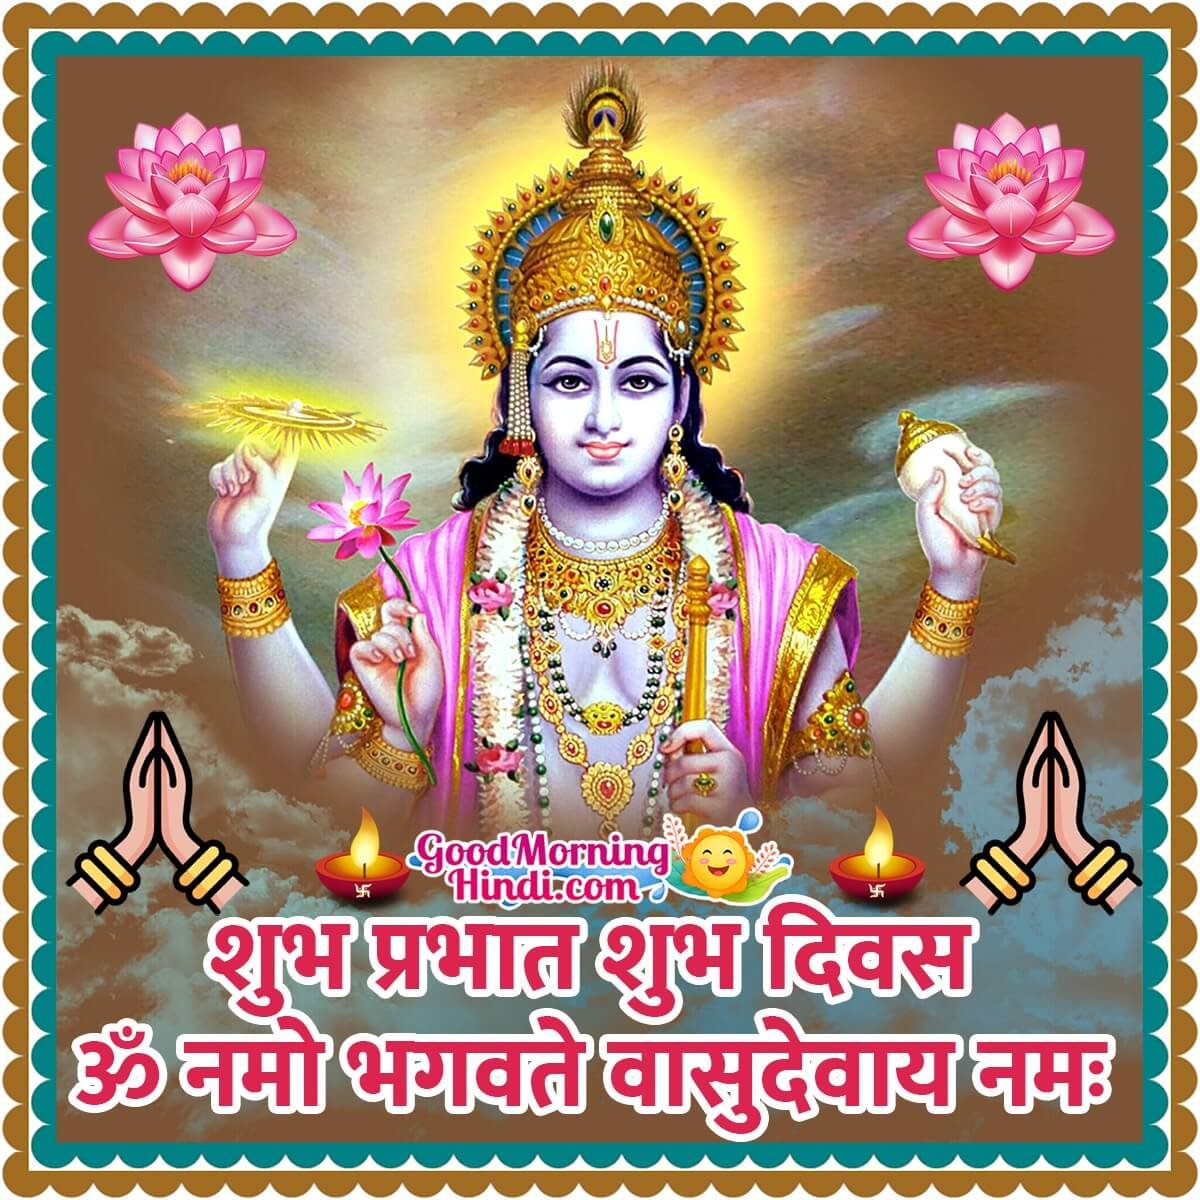 Good Morning Shri Vishnu Images In Hindi - Good Morning Wishes ...